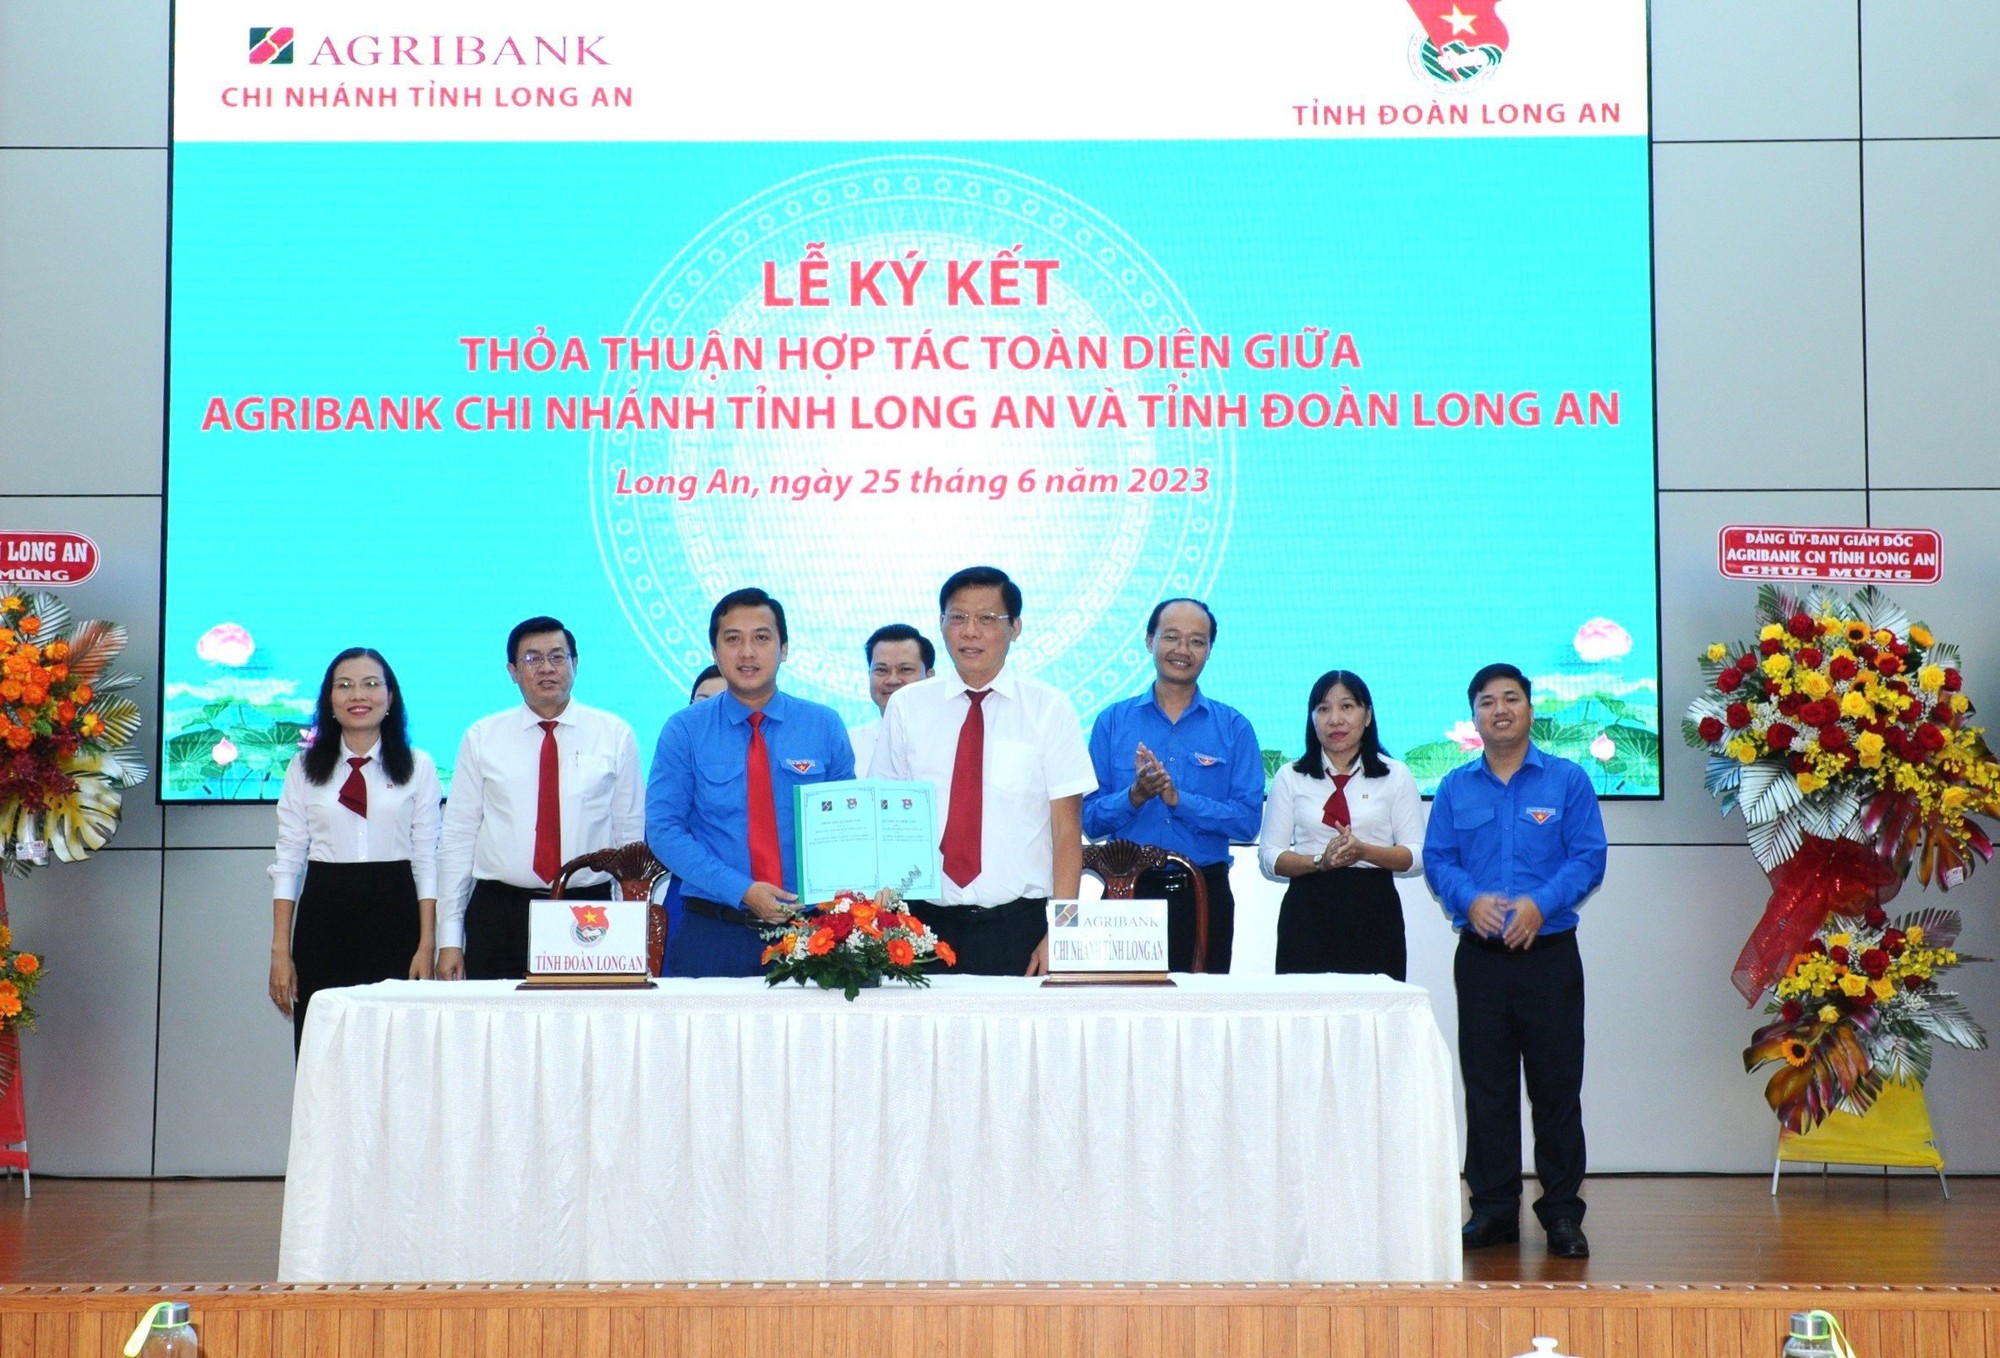 Agribank Chi nhánh tỉnh Long An ký kết thỏa thuận hợp tác toàn diện với Tỉnh đoàn Long An - Ảnh 1.